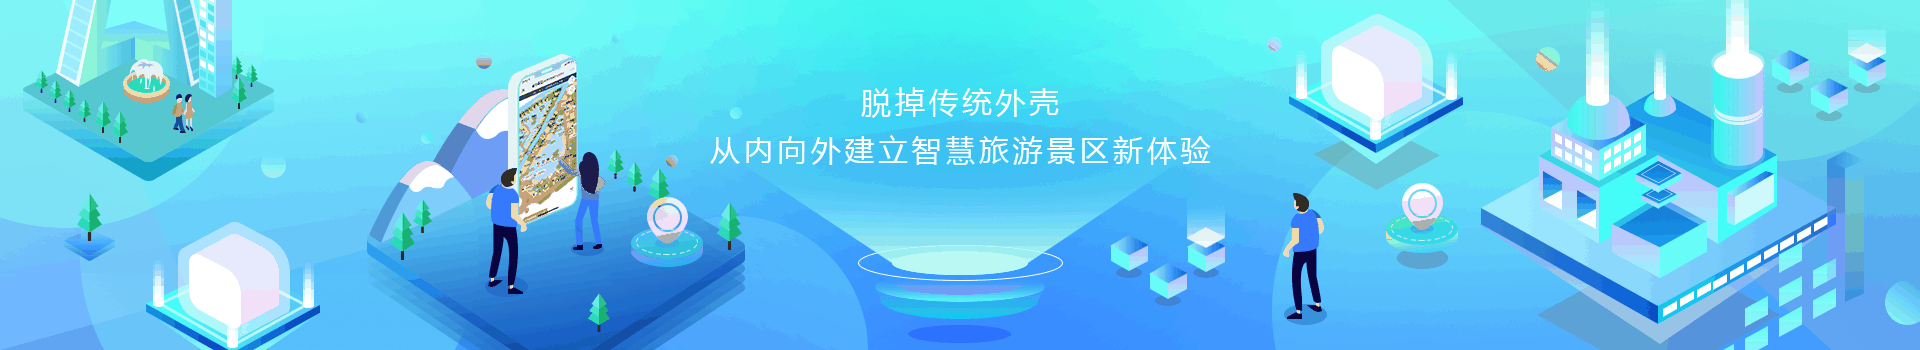 智慧景区-banner图